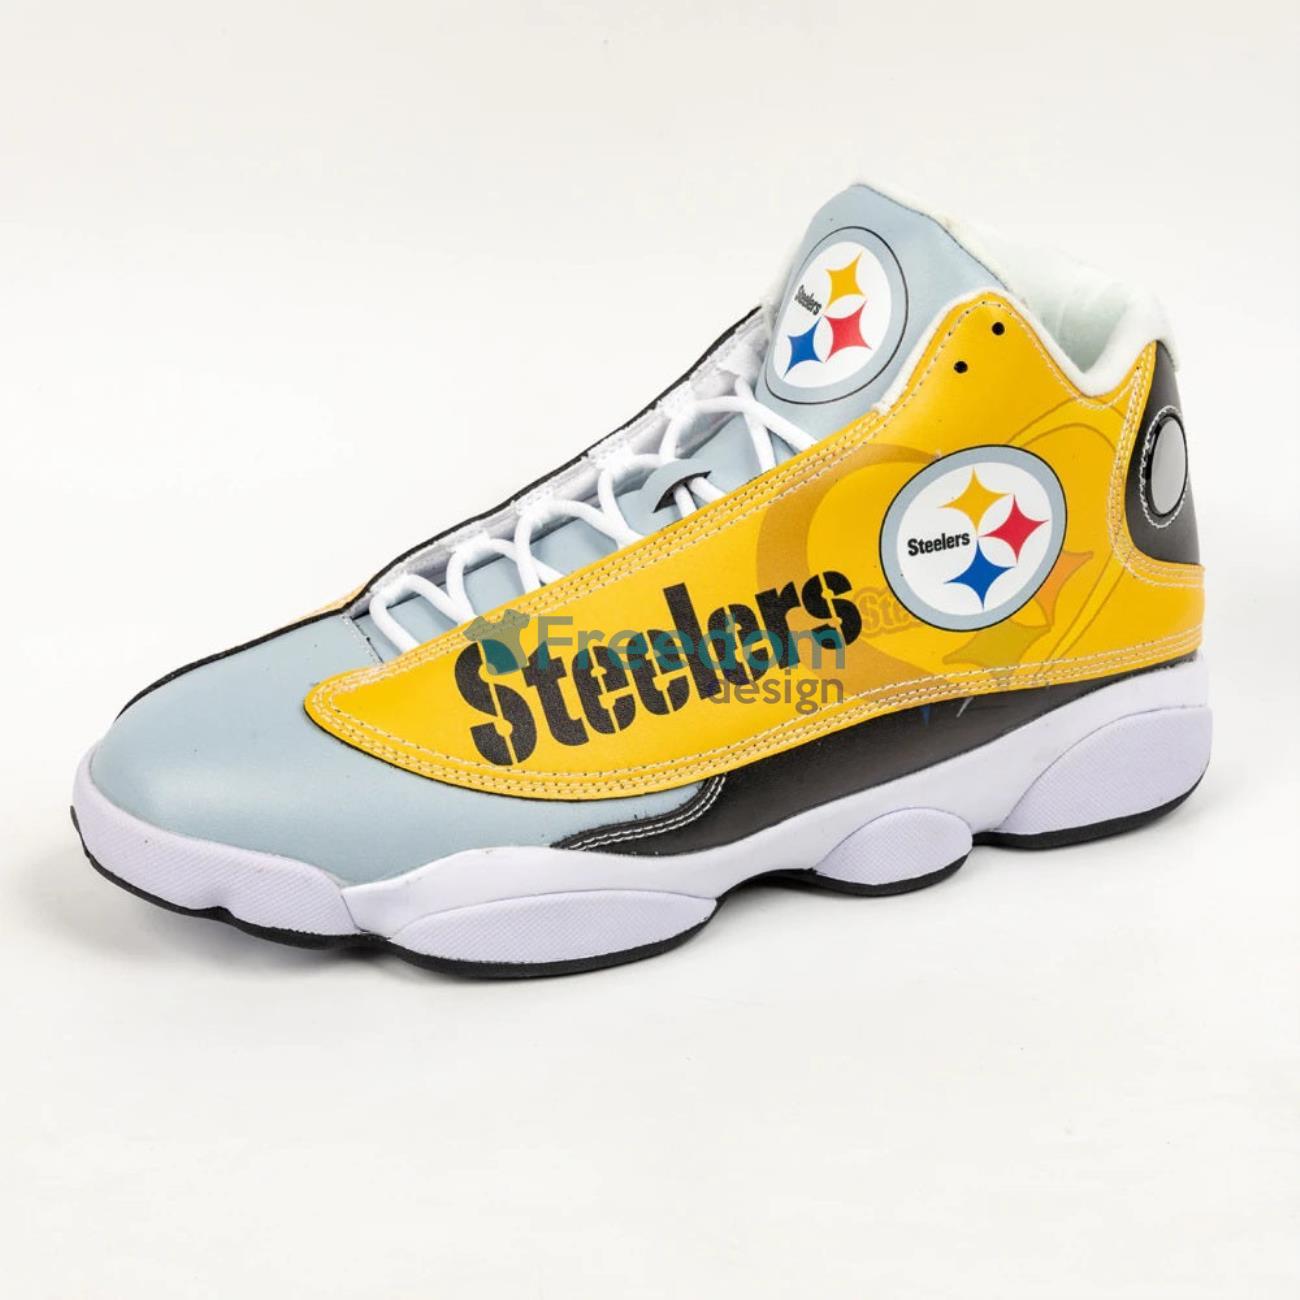 Pittsburgh Steelers White Air Jordan 13 Sneaker Shoes